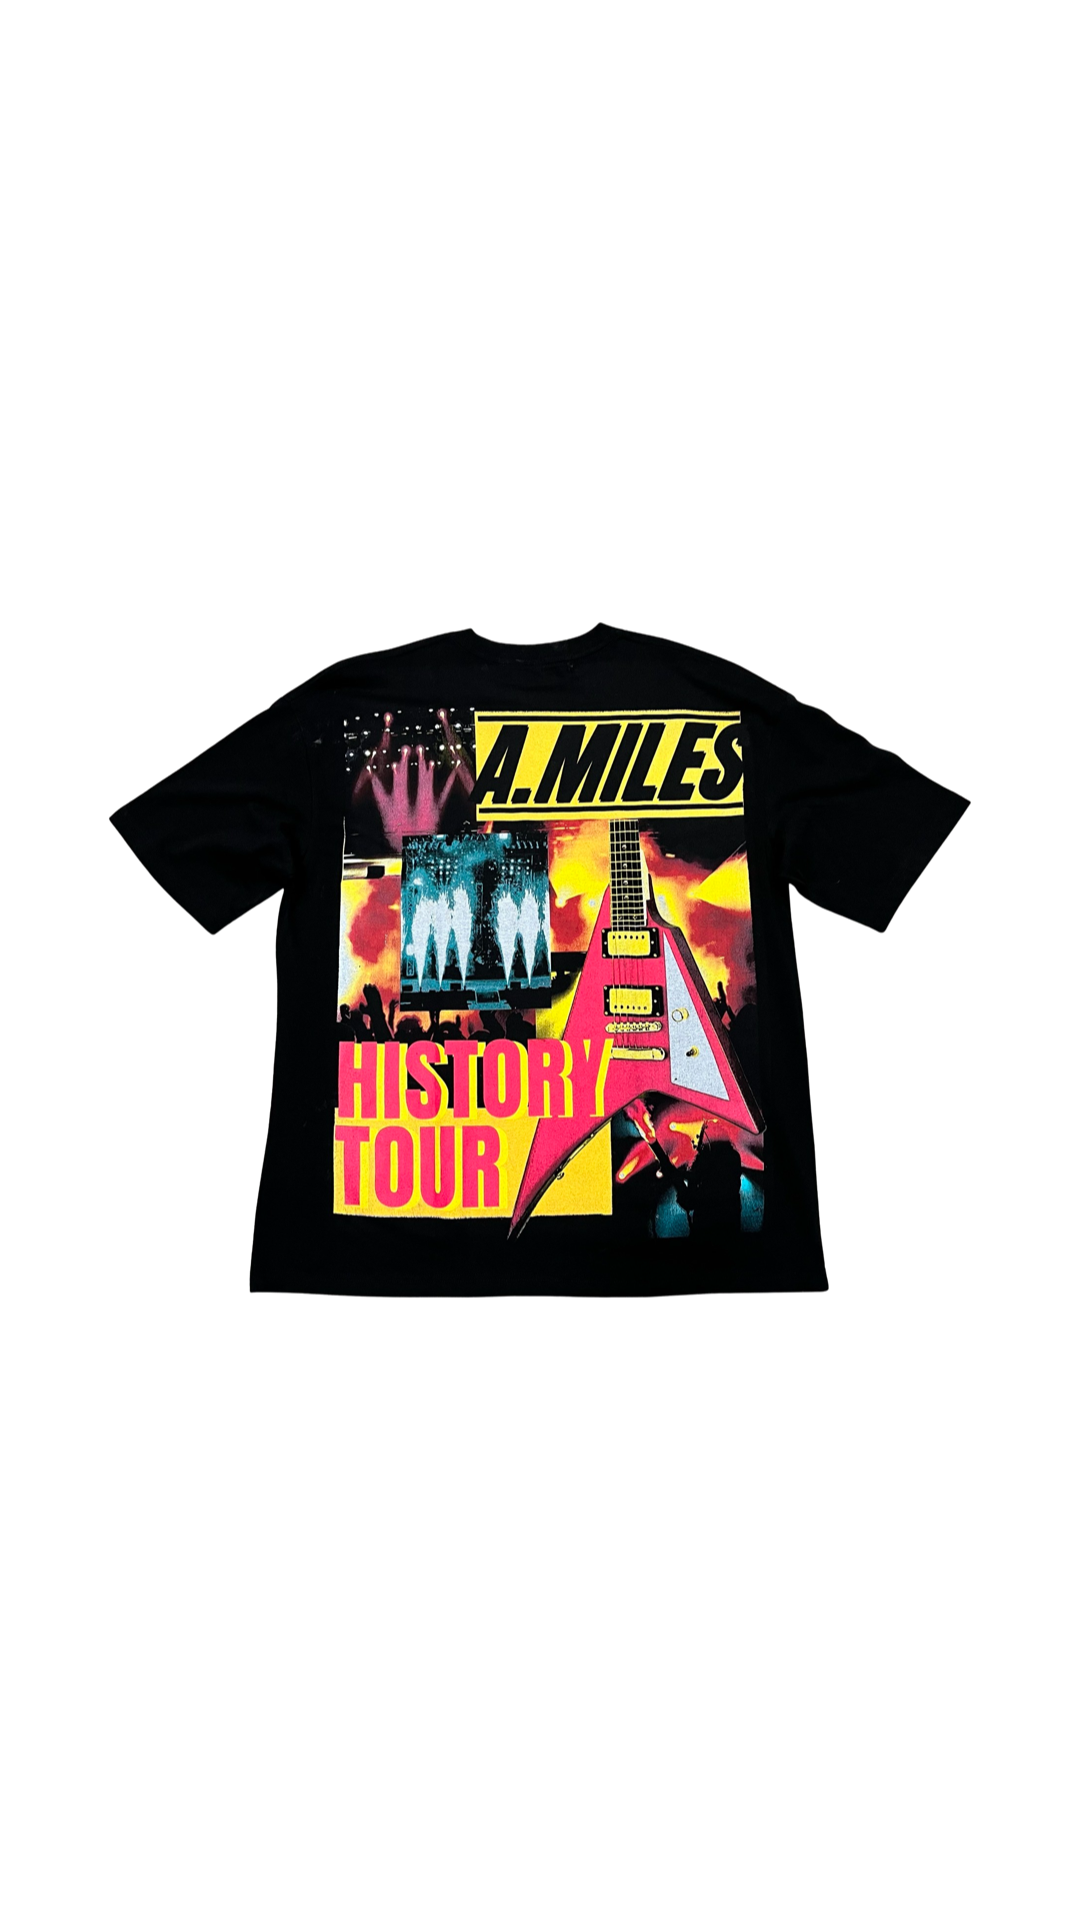 KIY studios - A.Miles “History tour” tee